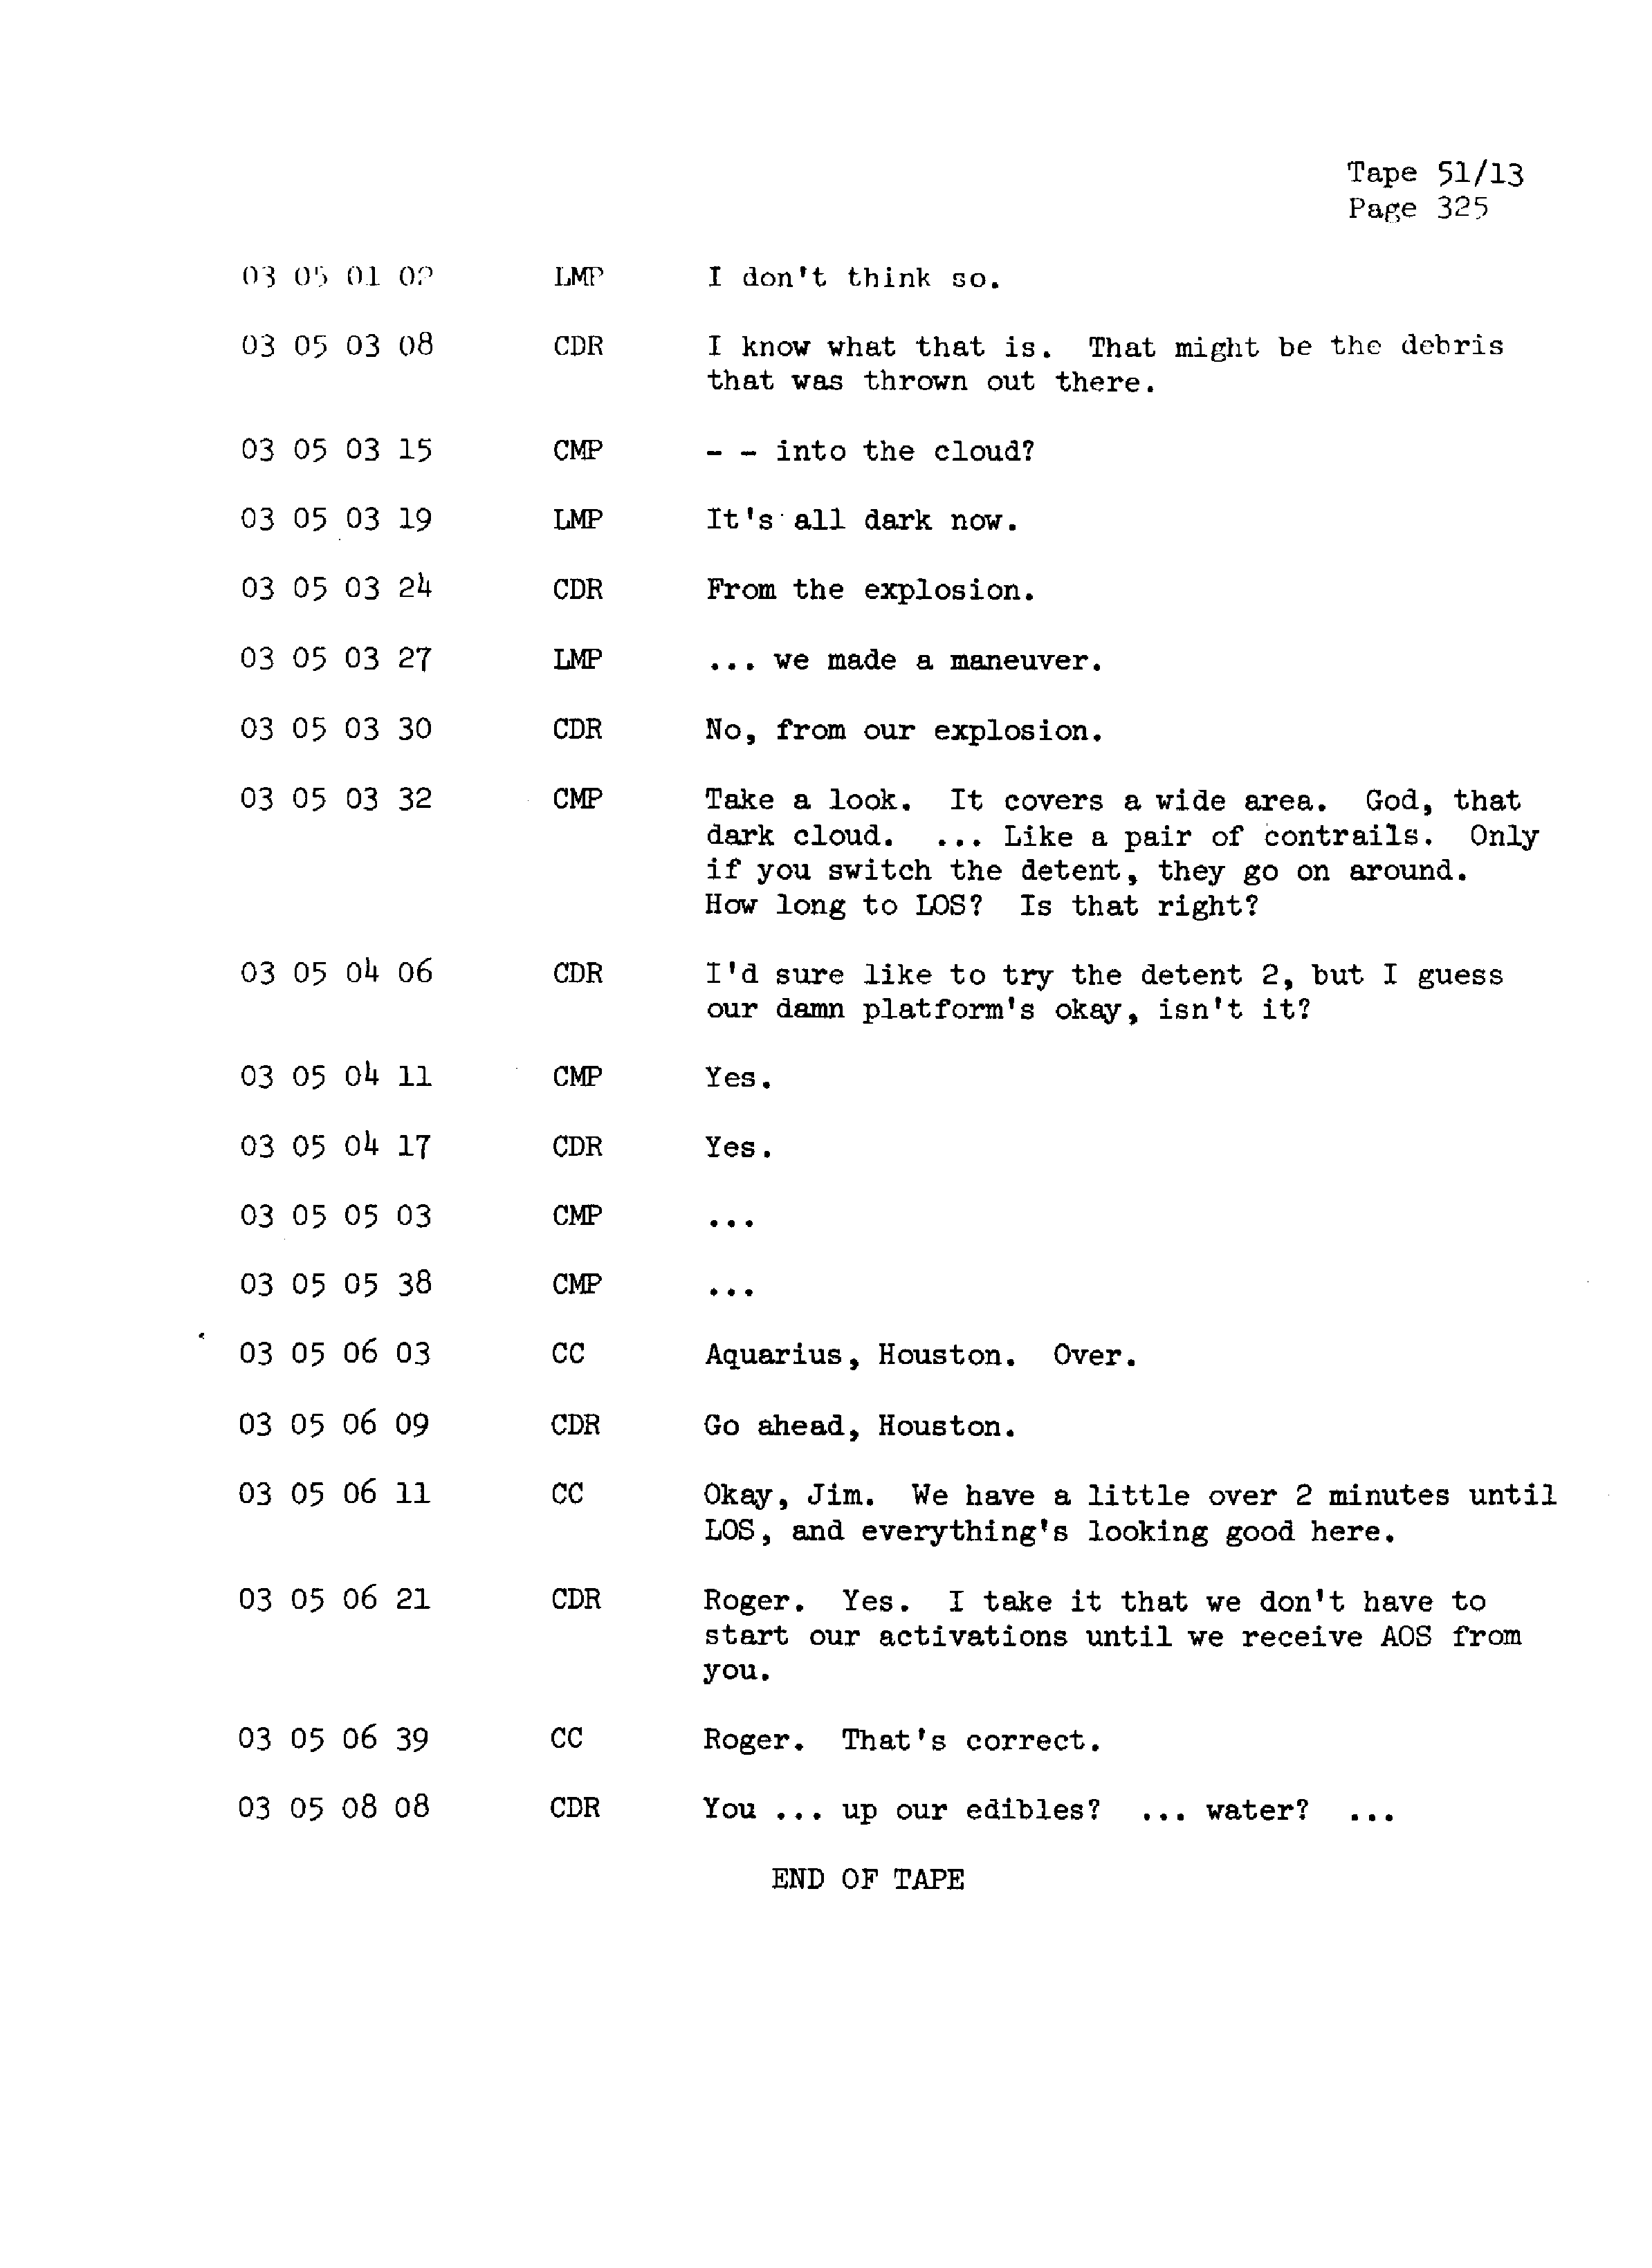 Page 332 of Apollo 13’s original transcript